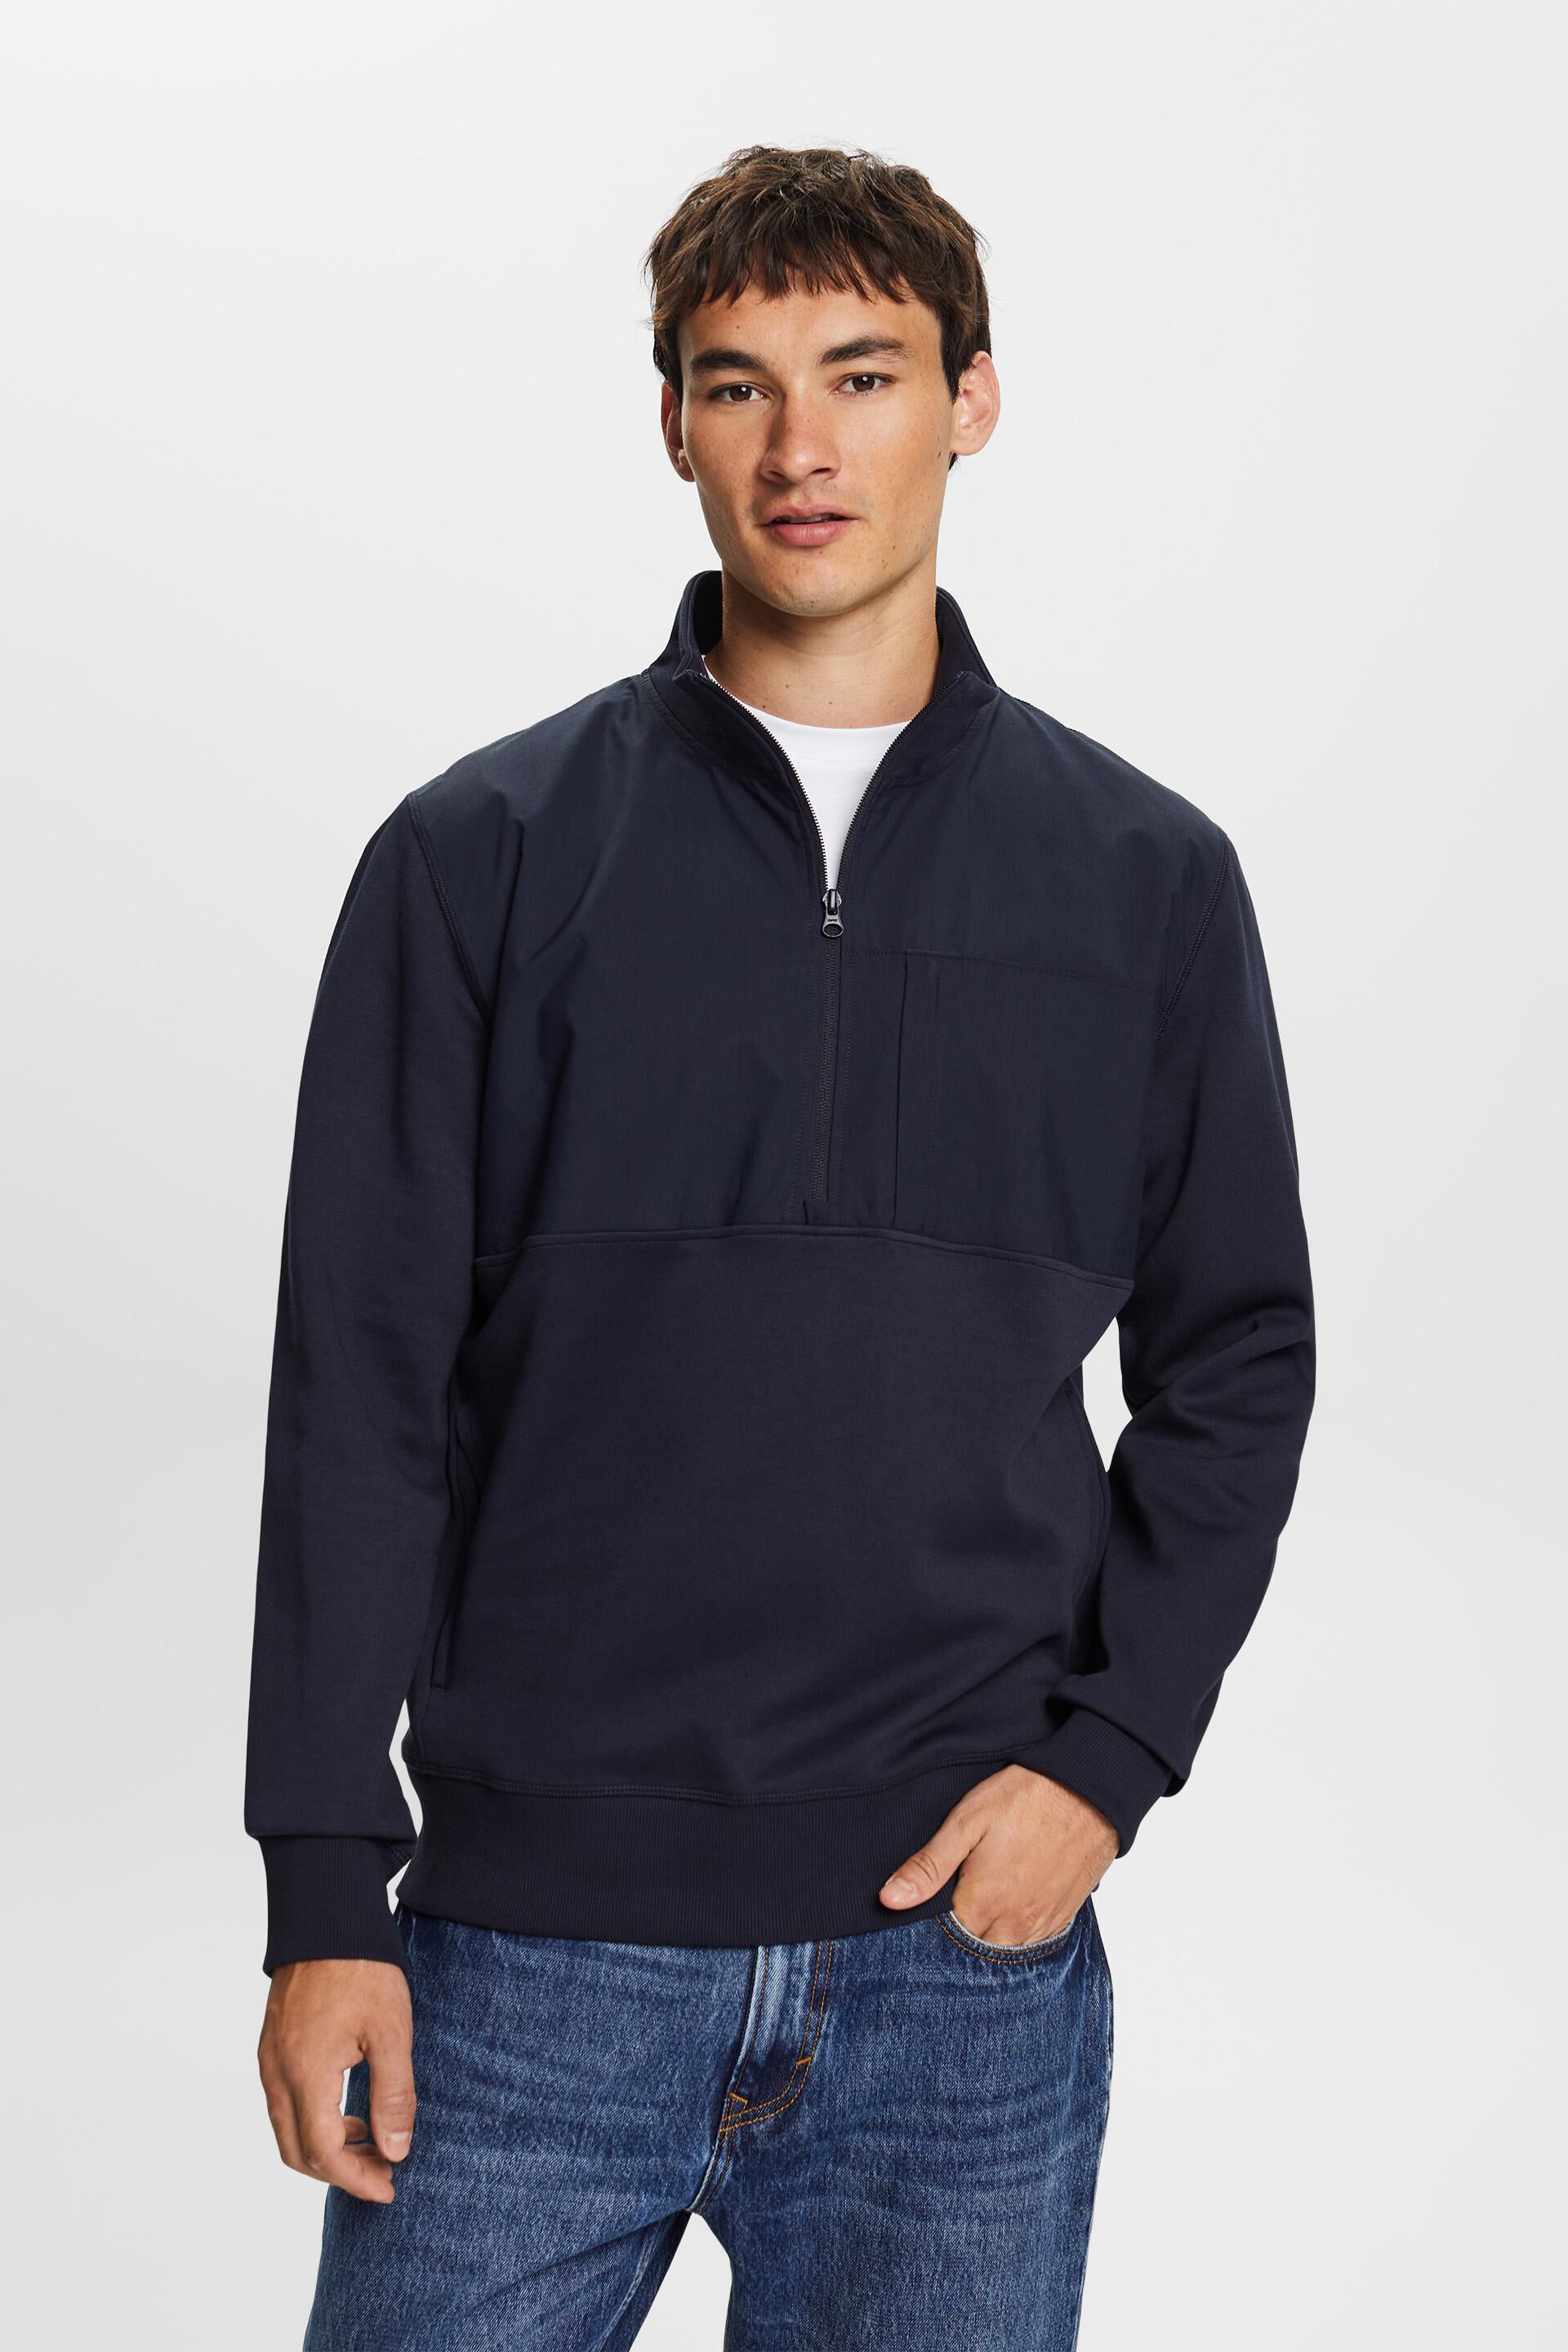 Esprit material Mixed sweatshirt half-zip